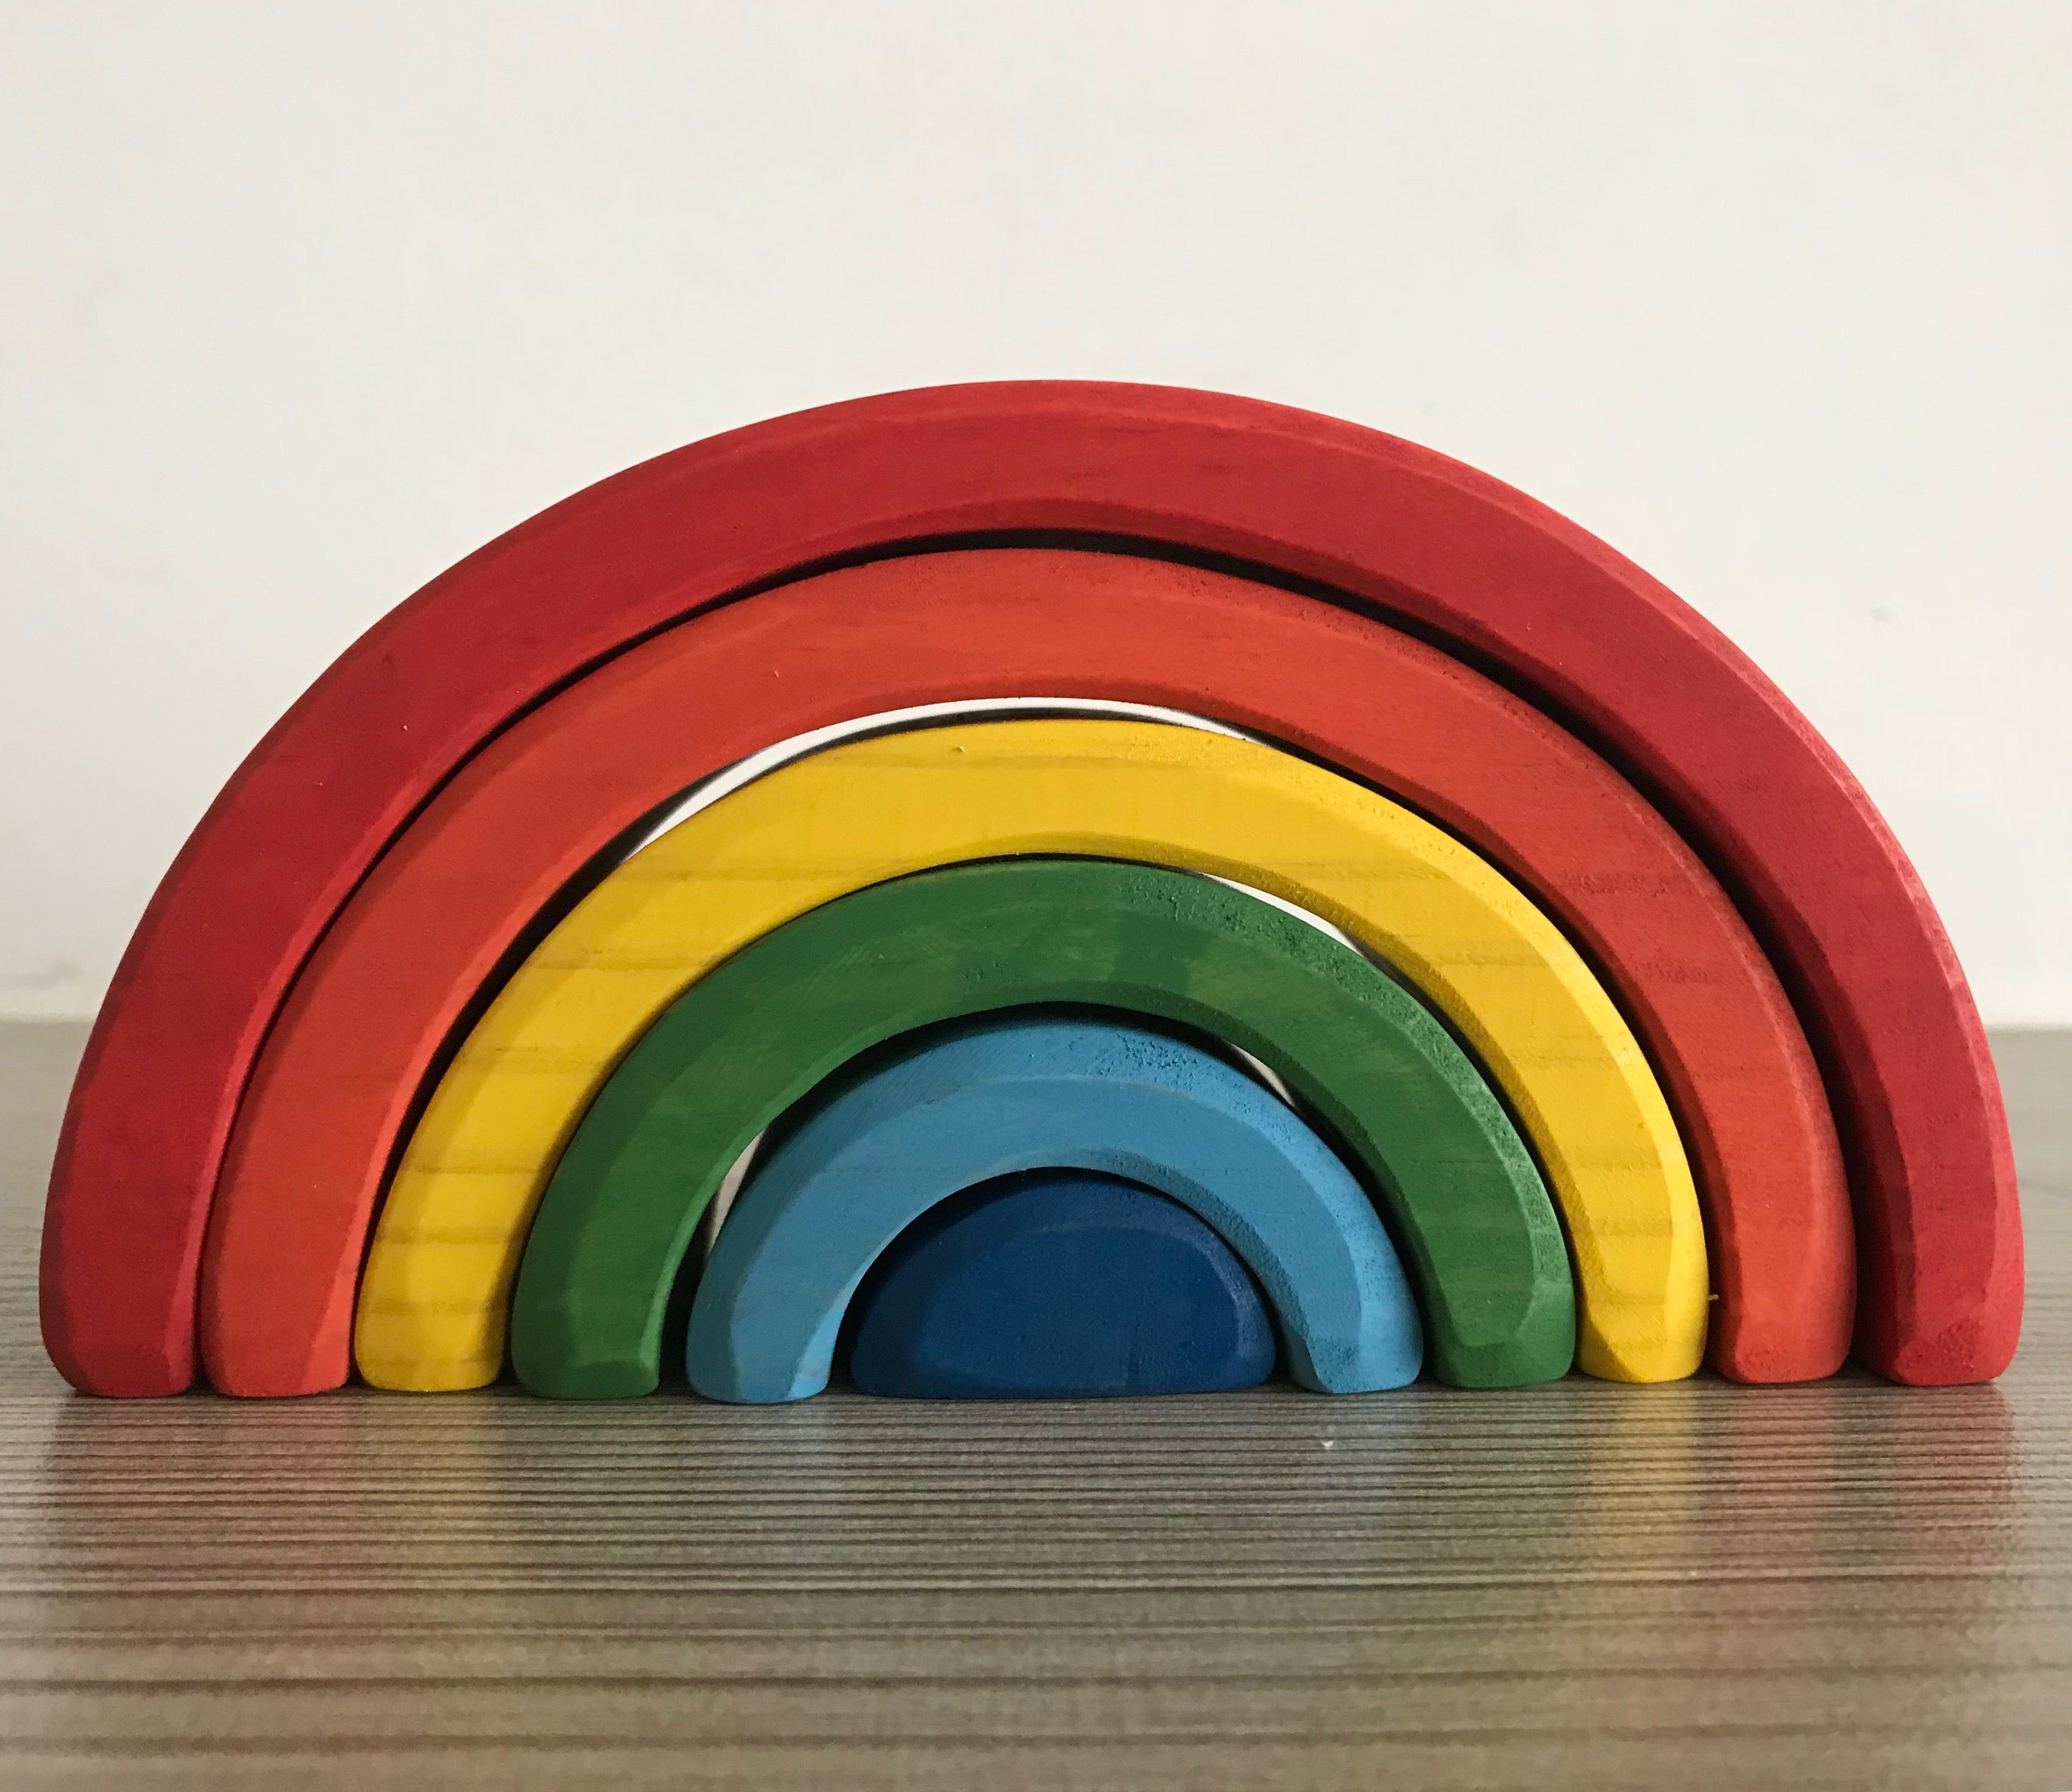 TOWO - Cajas apilables de madera, colores del arco iris, bloques de tazas  para anidar y clasificar para niños pequeños, cubos apilables, juguetes